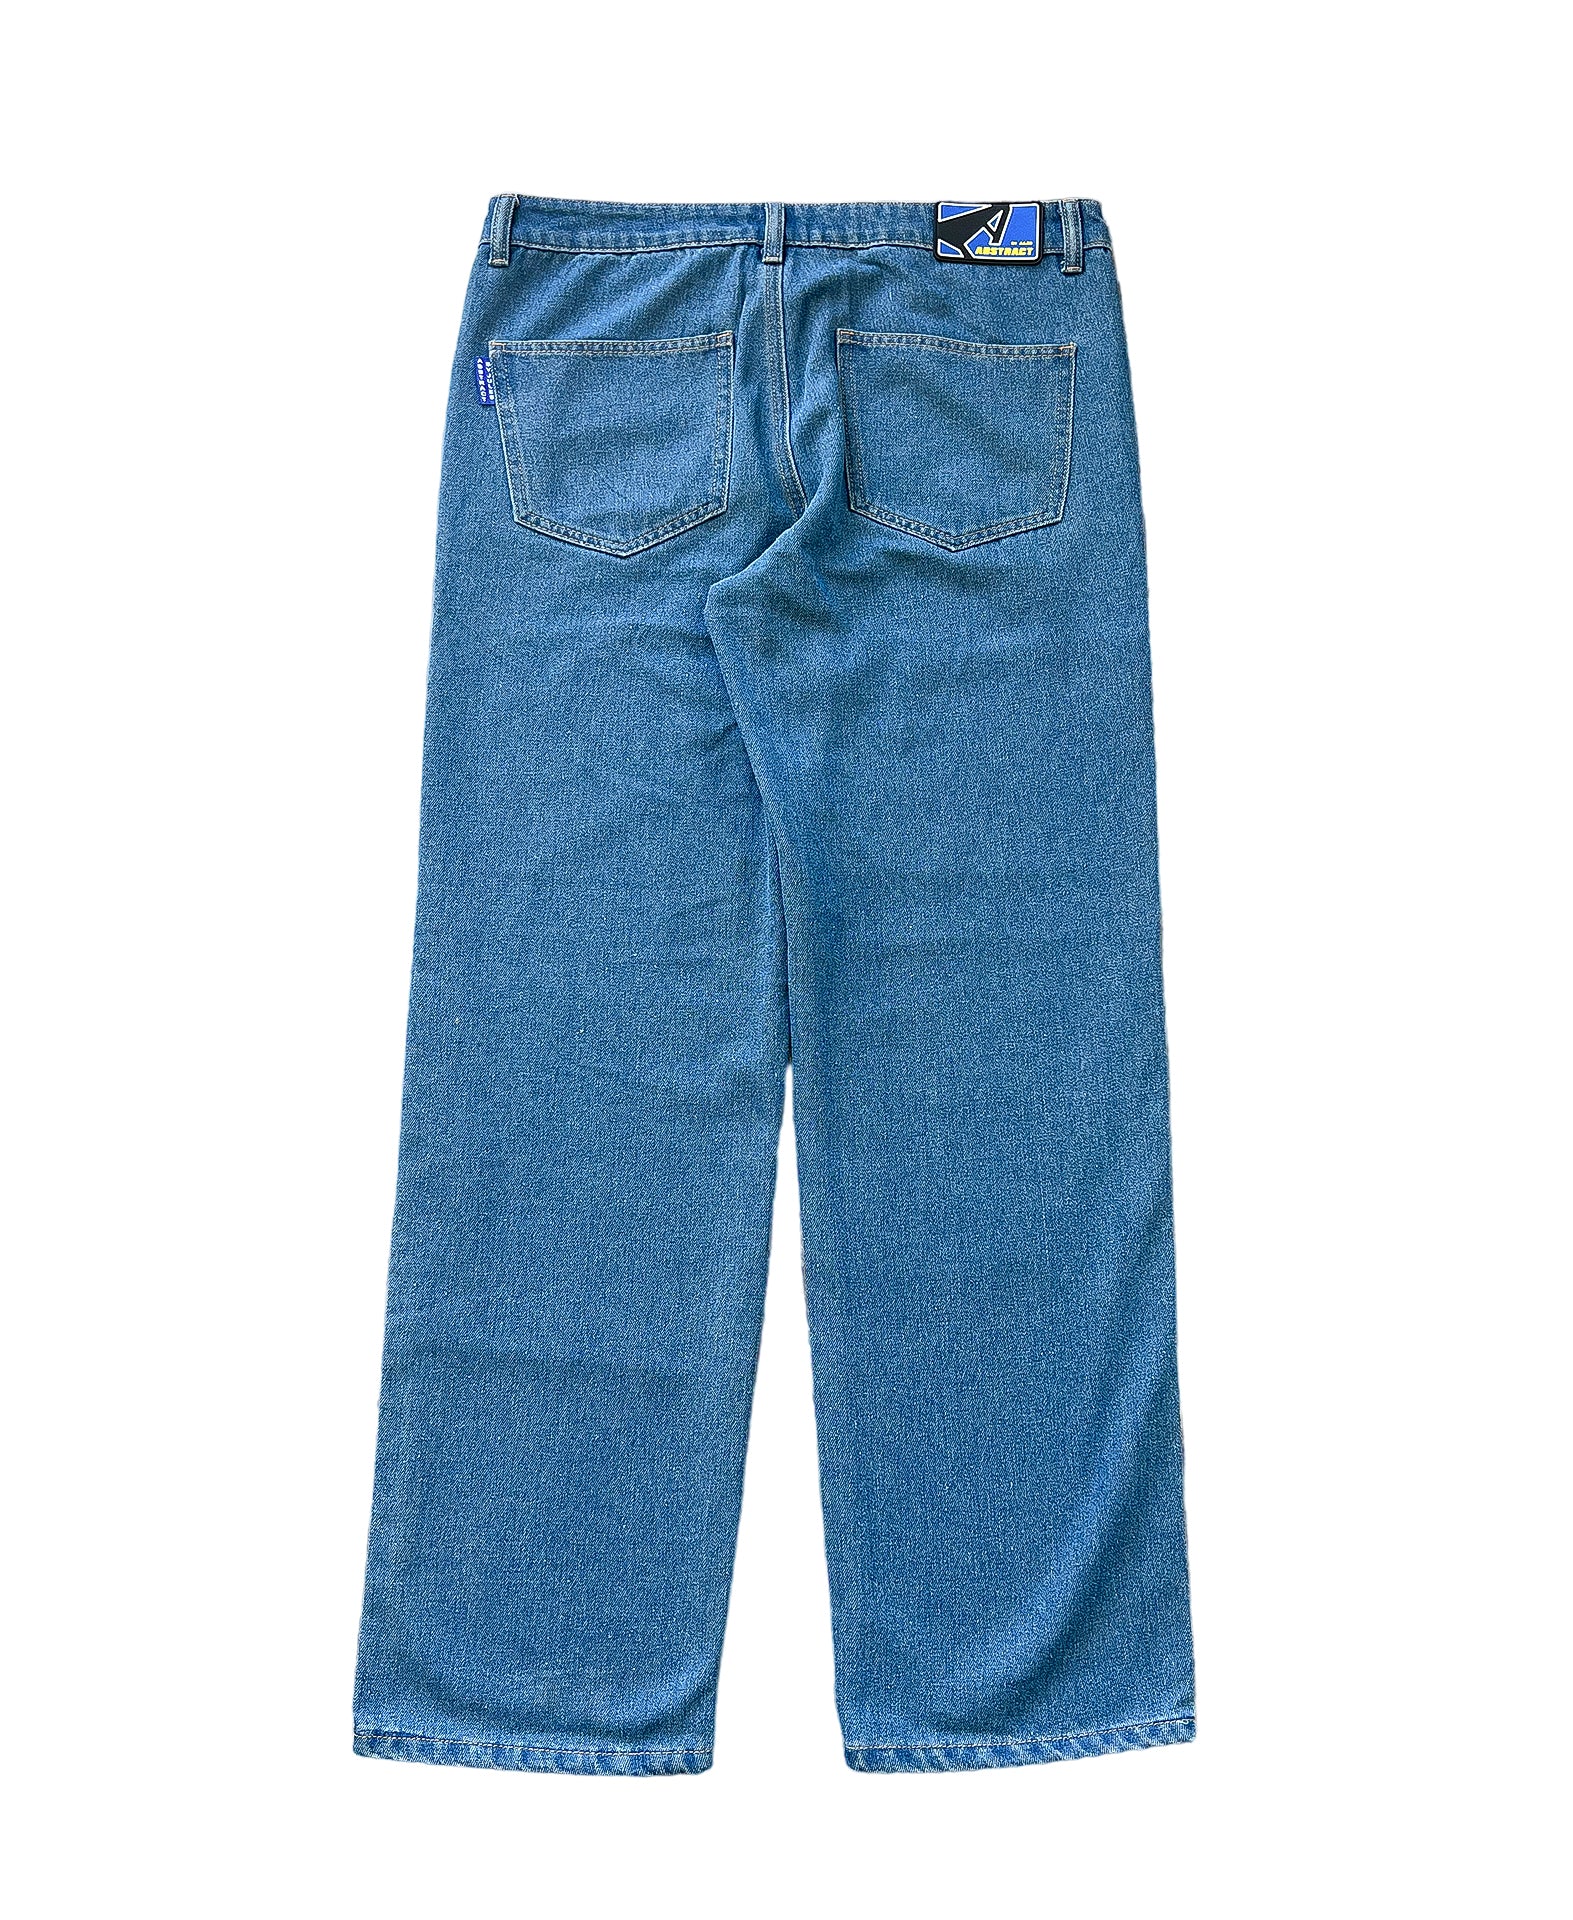 Suede Chap Jeans - Blue Wash